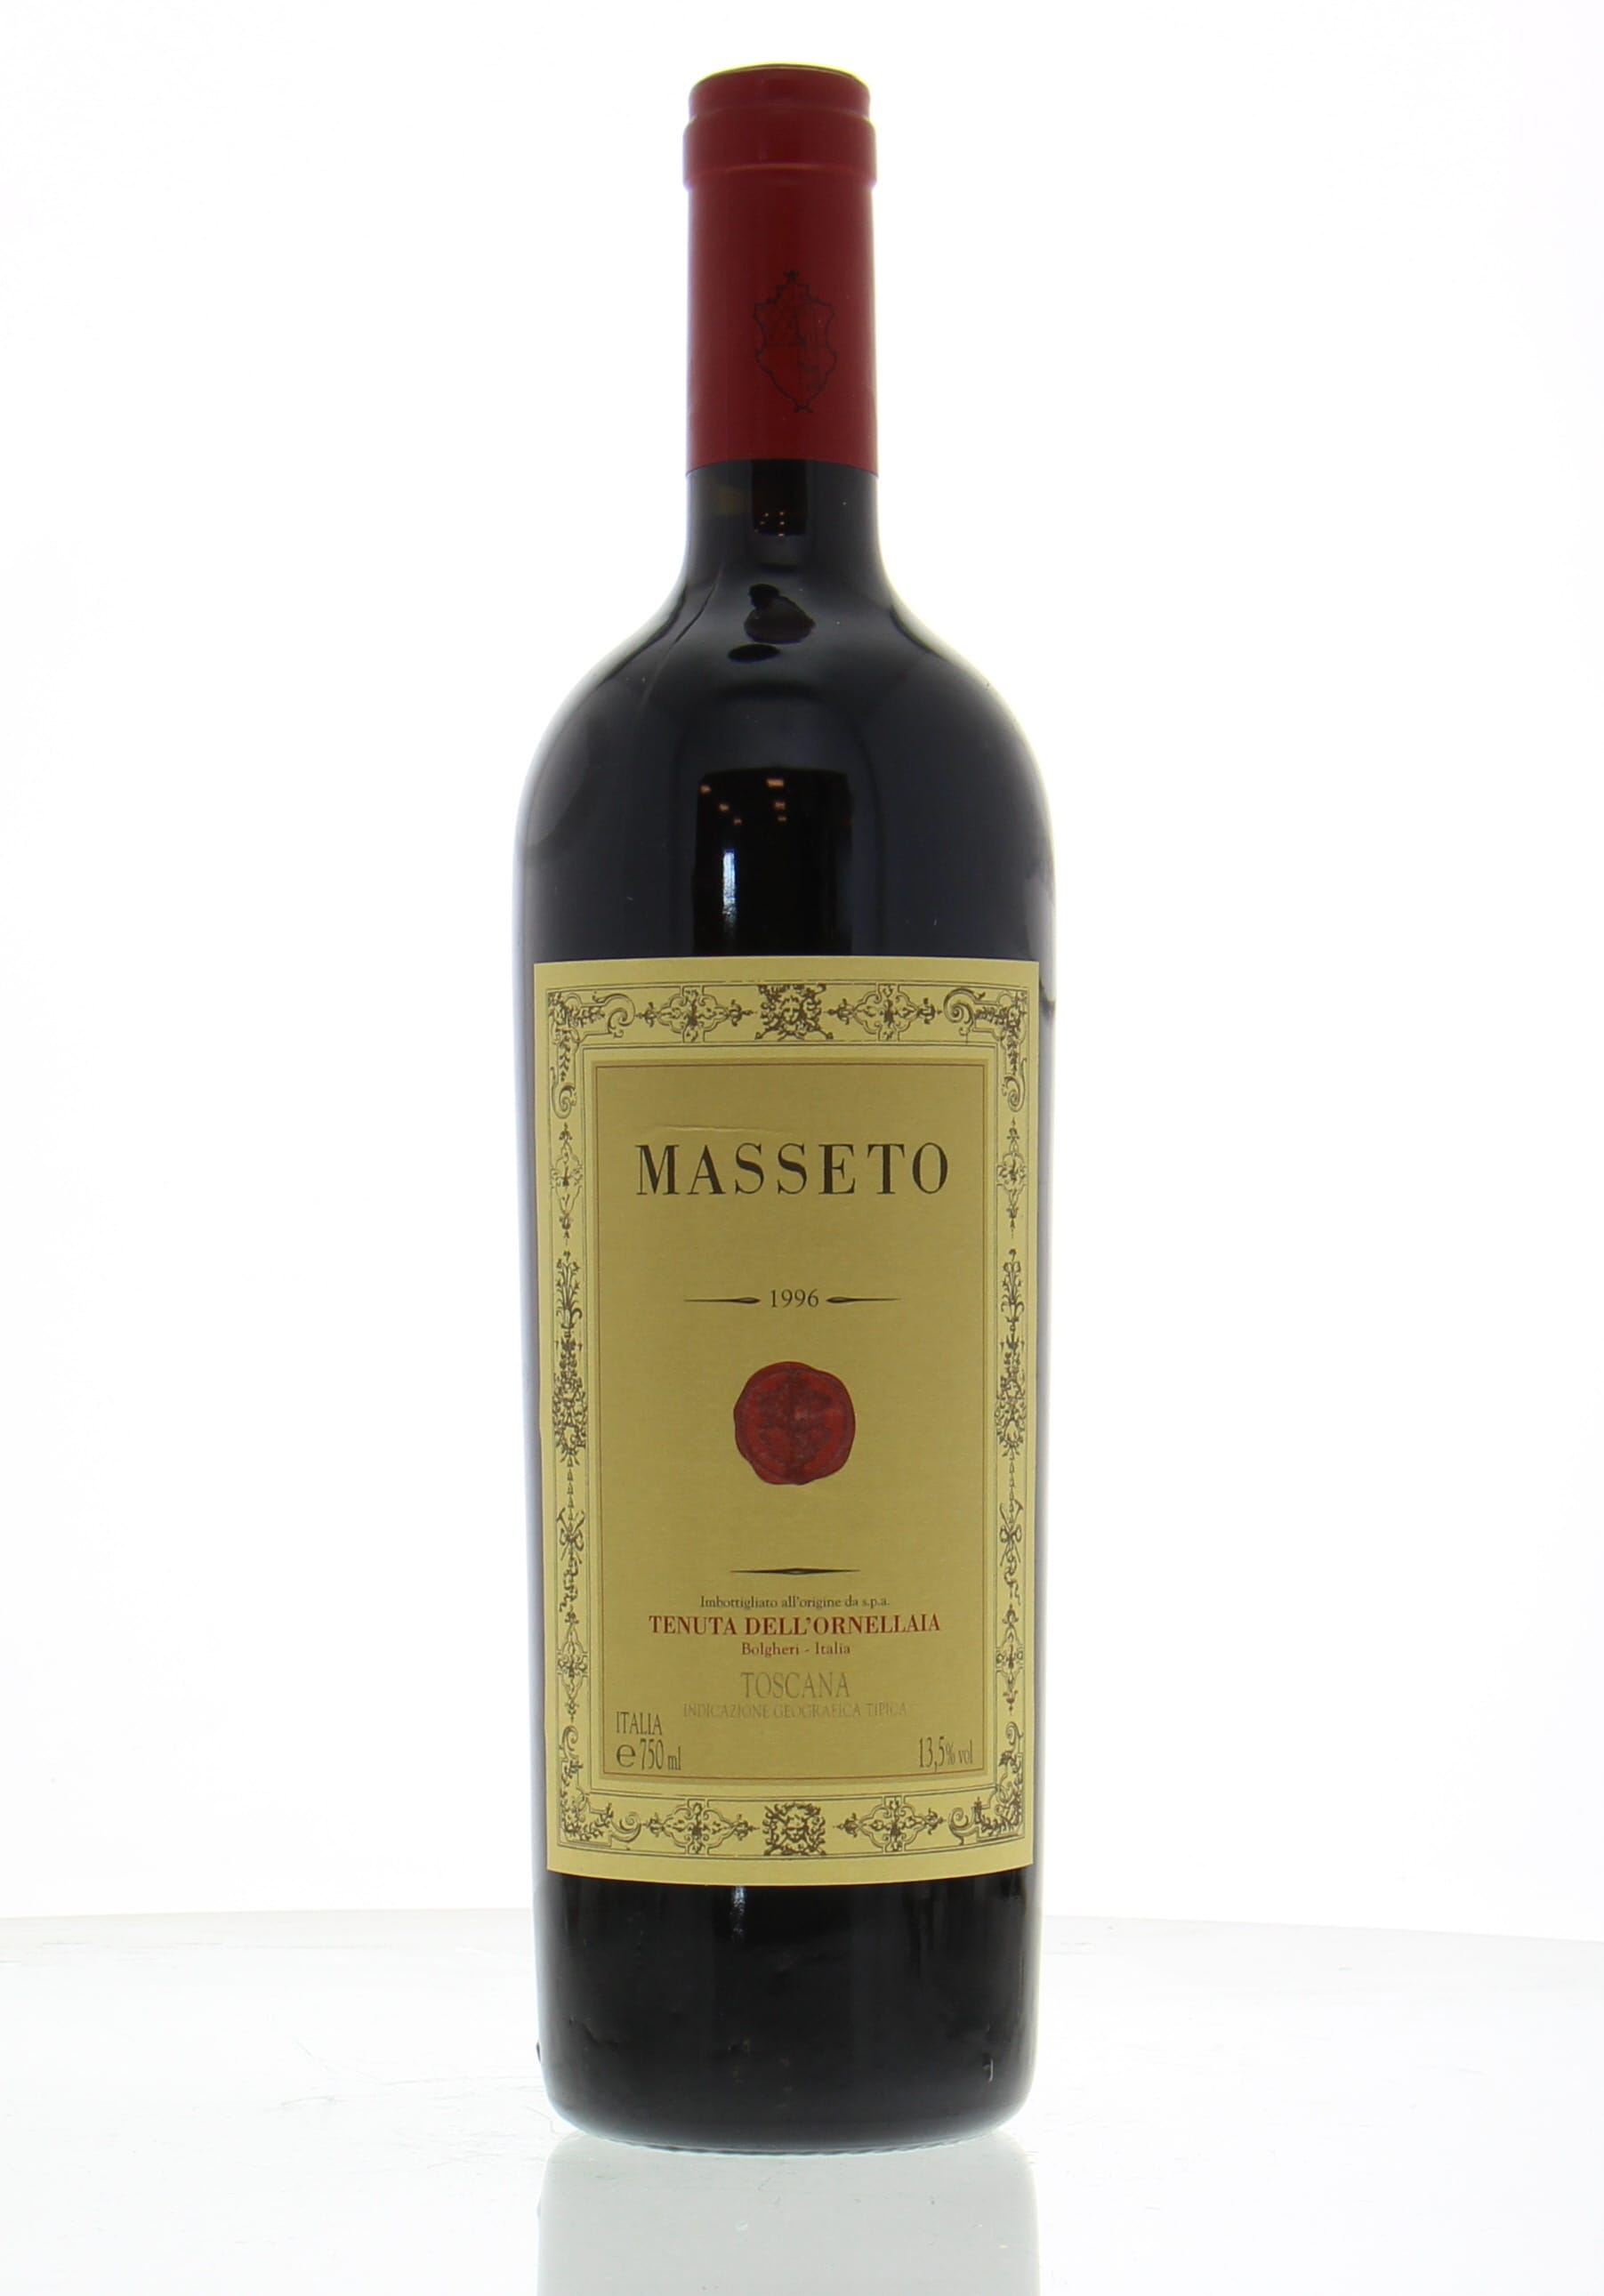 masseto wine price 2020